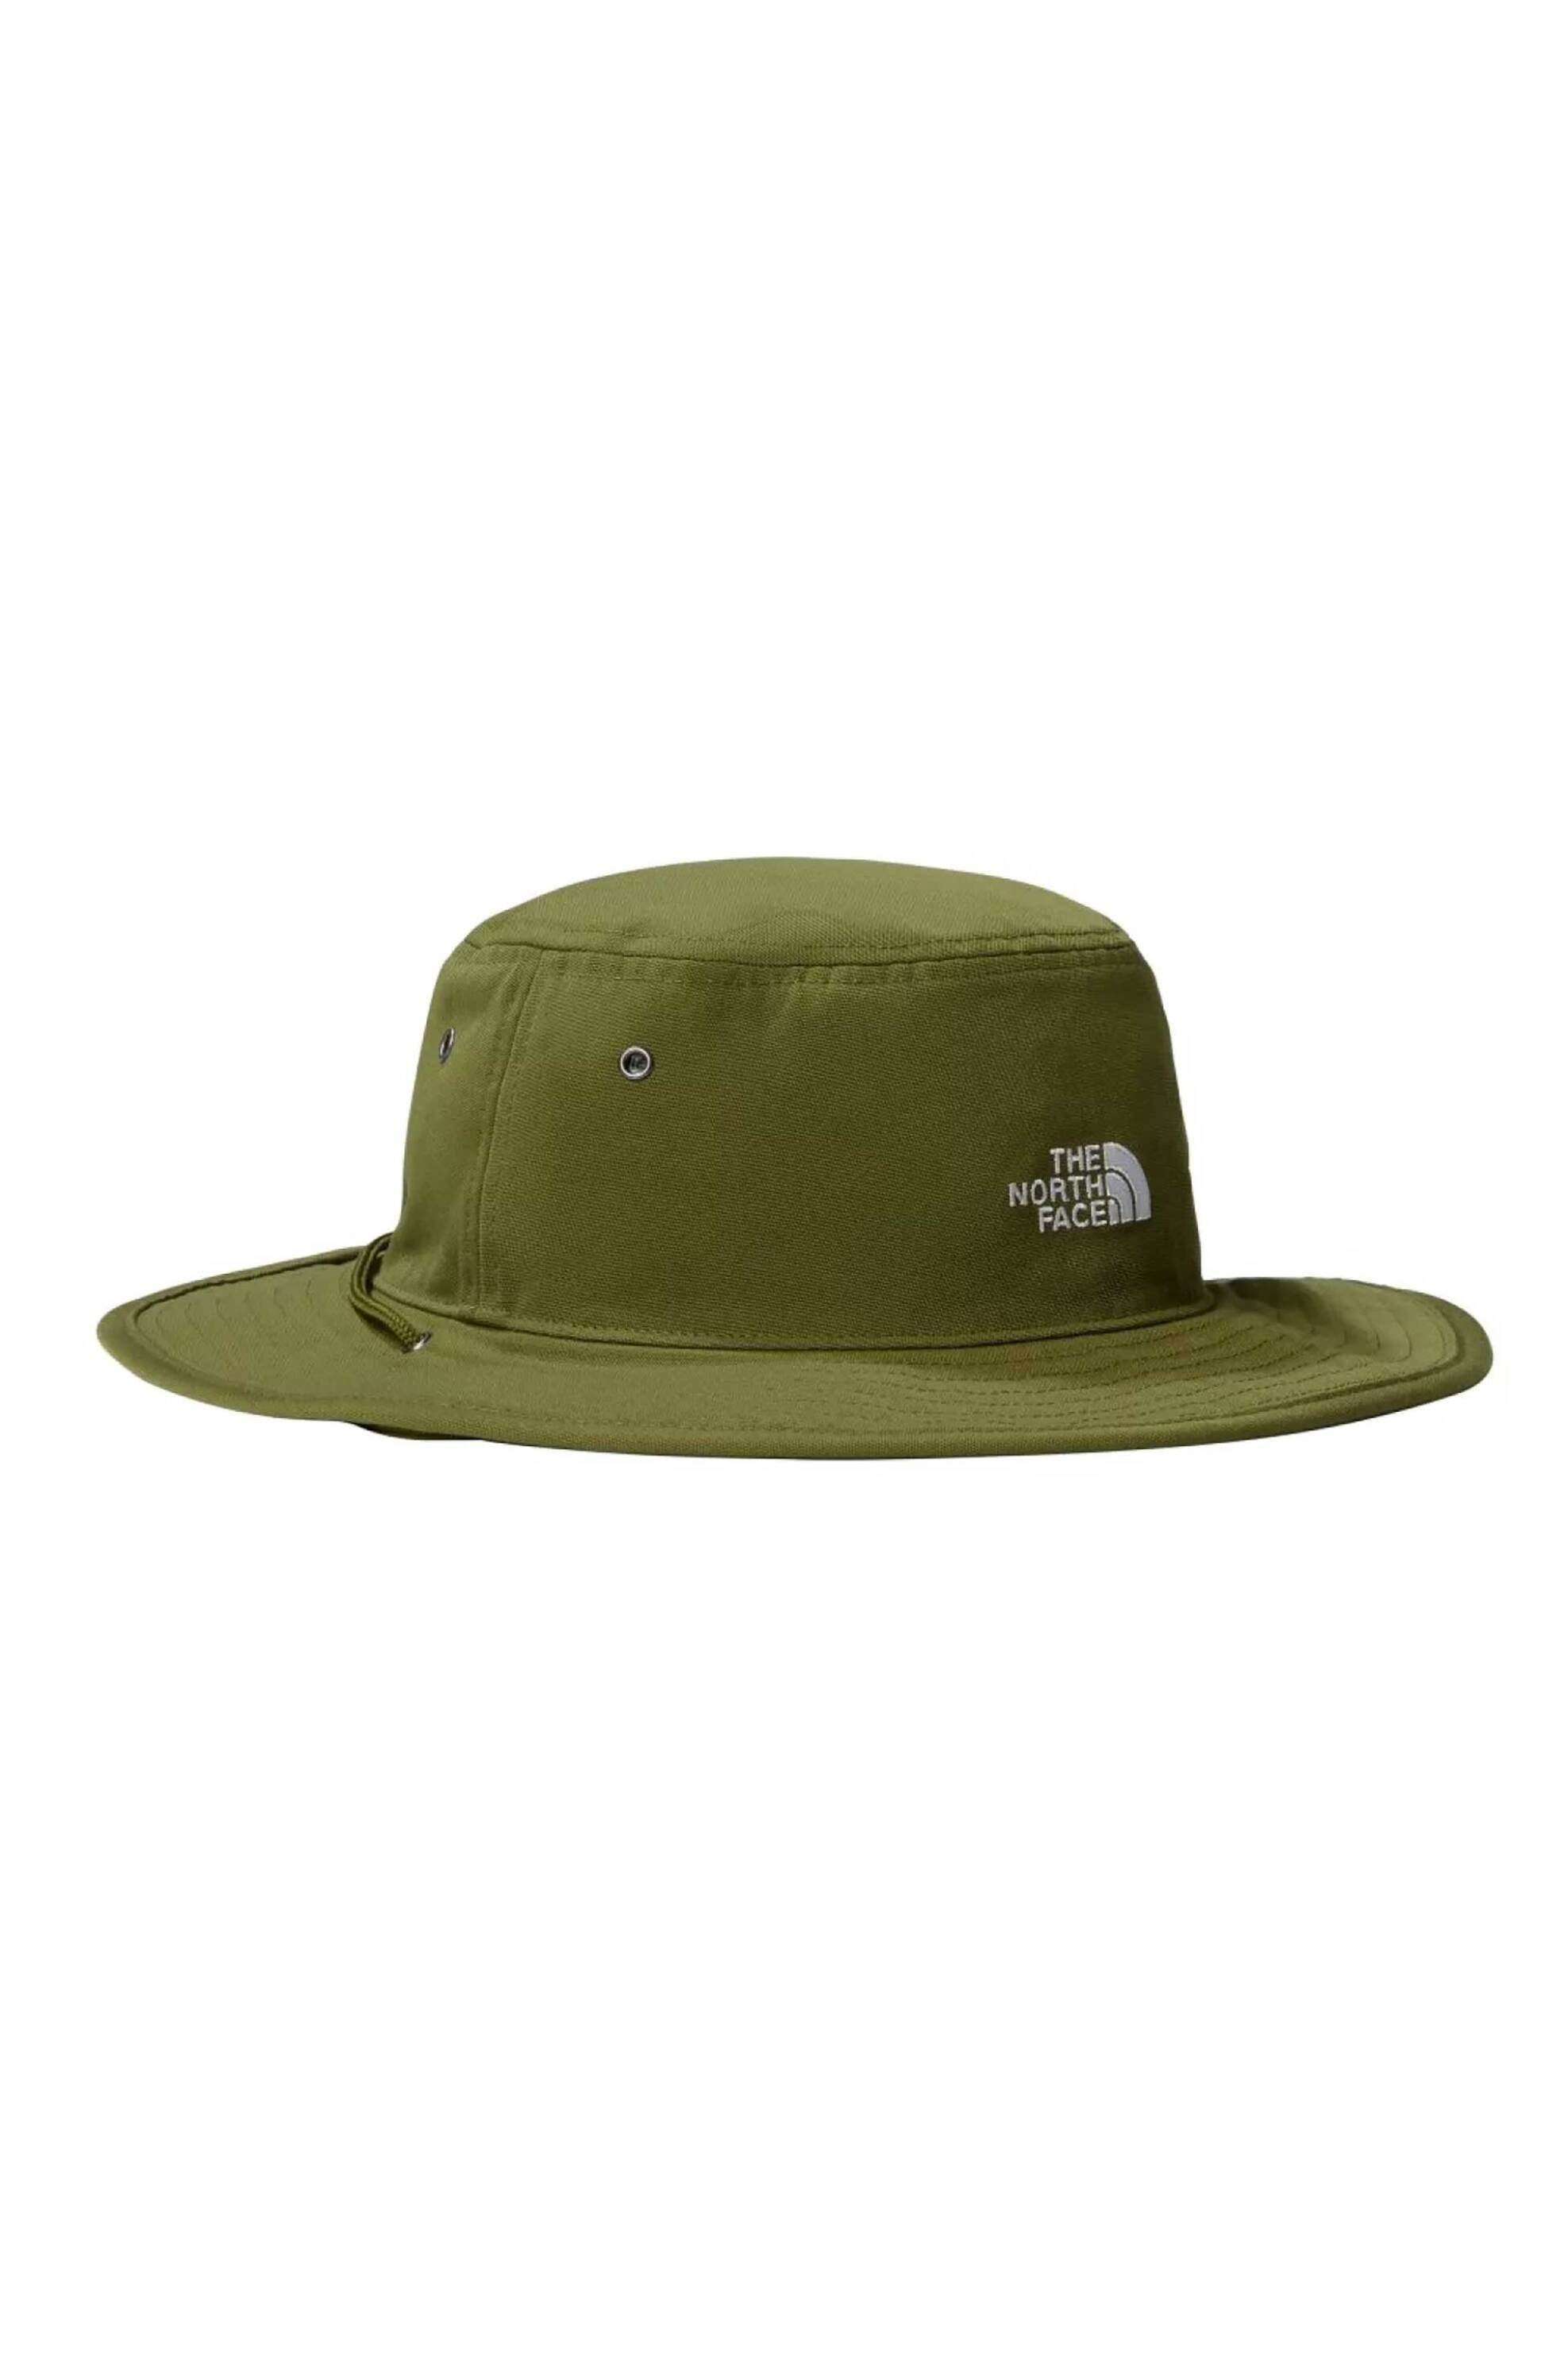 Ανδρική Μόδα > Ανδρικά Αξεσουάρ > Ανδρικά Καπέλα & Σκούφοι The North Face unisex καπέλο μονόχρωμο με κεντημένο λογότυπο " '66 Brimmer" - NF0A5FX3PIB1 Λαδί